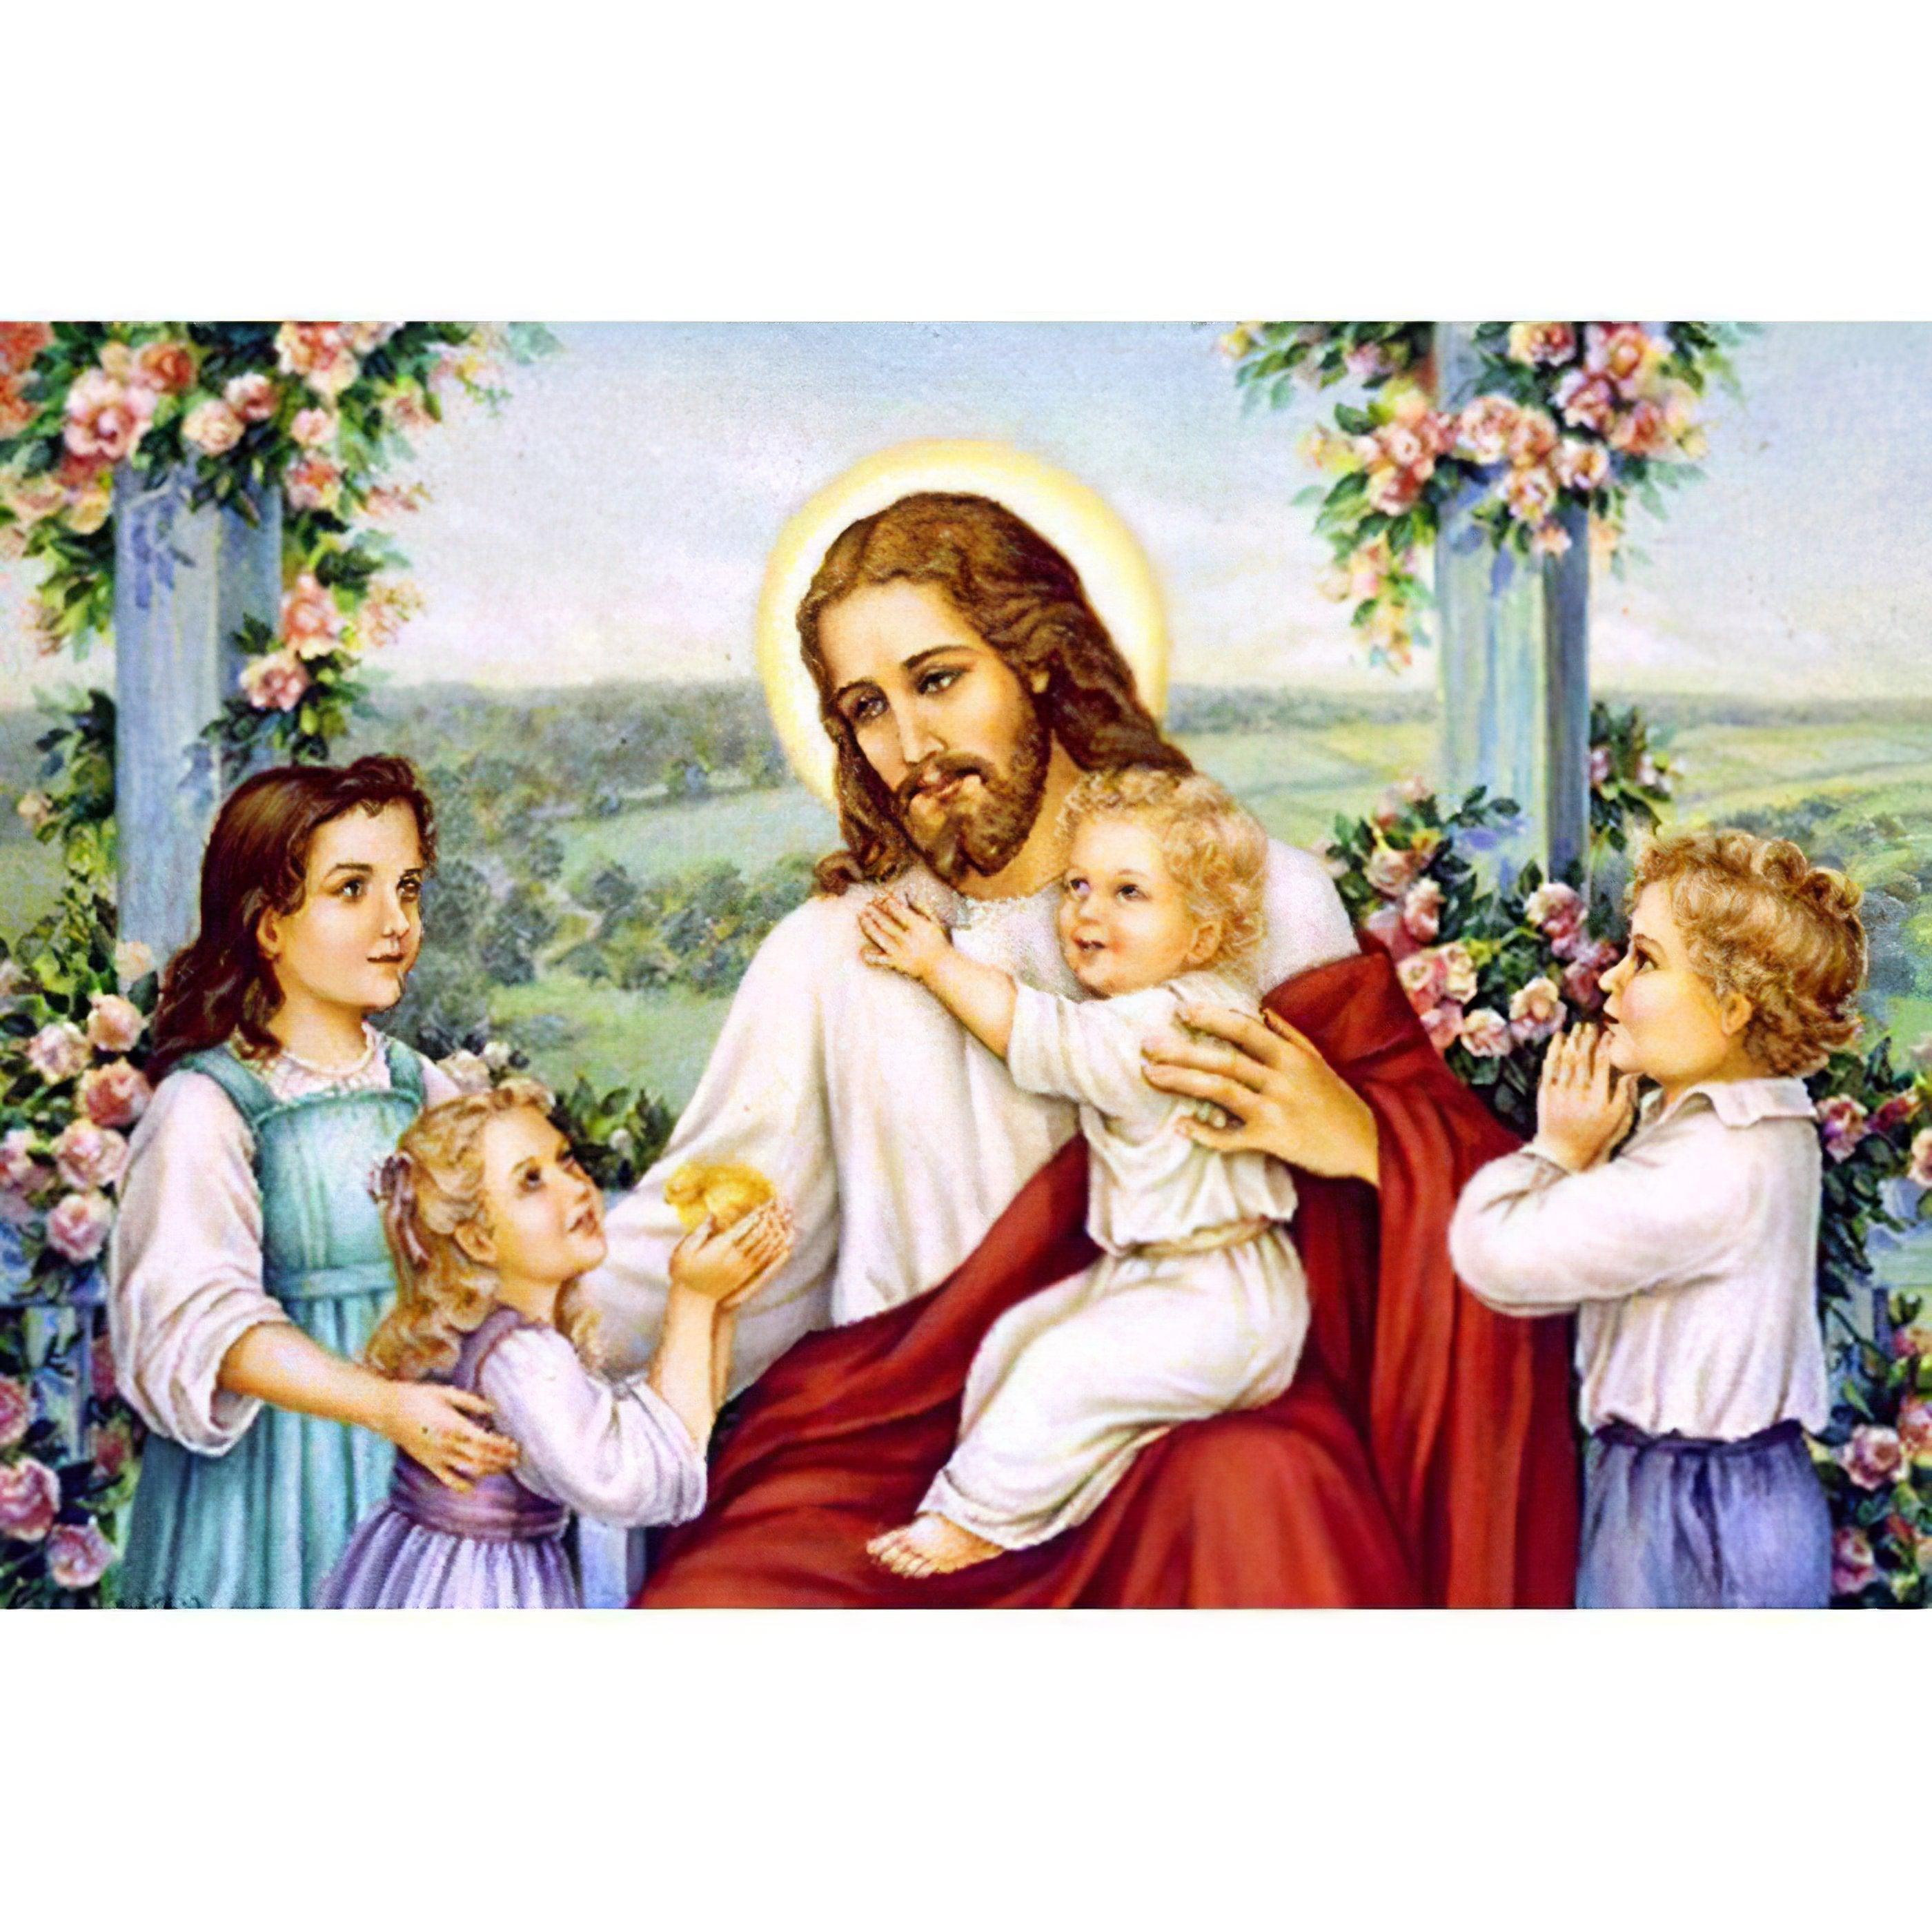 Diamond Painting - Kinder und Jesus